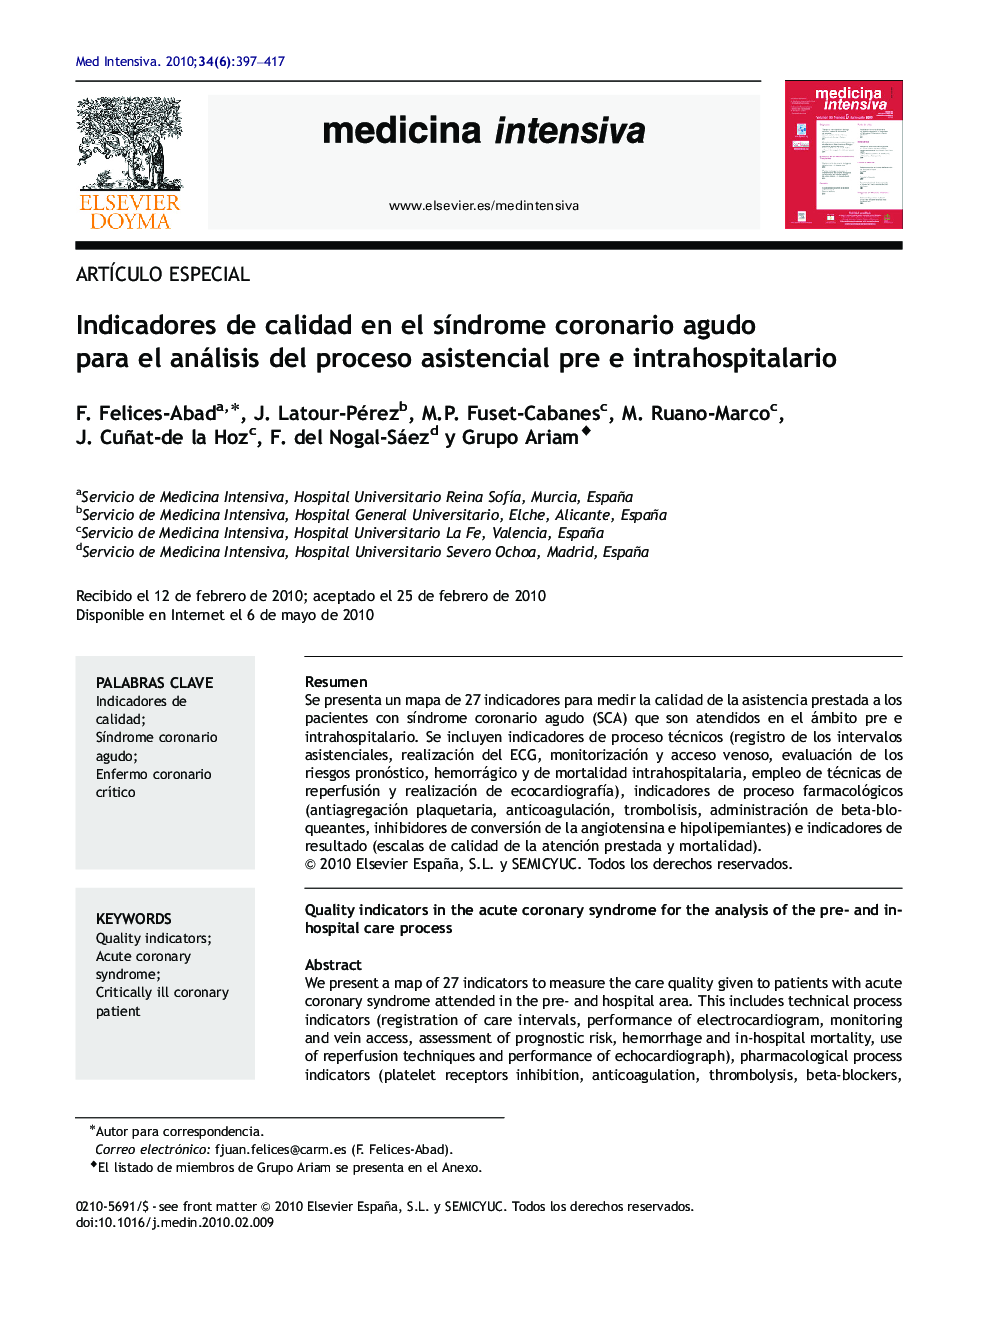 Indicadores de calidad en el síndrome coronario agudo para el análisis del proceso asistencial pre e intrahospitalario